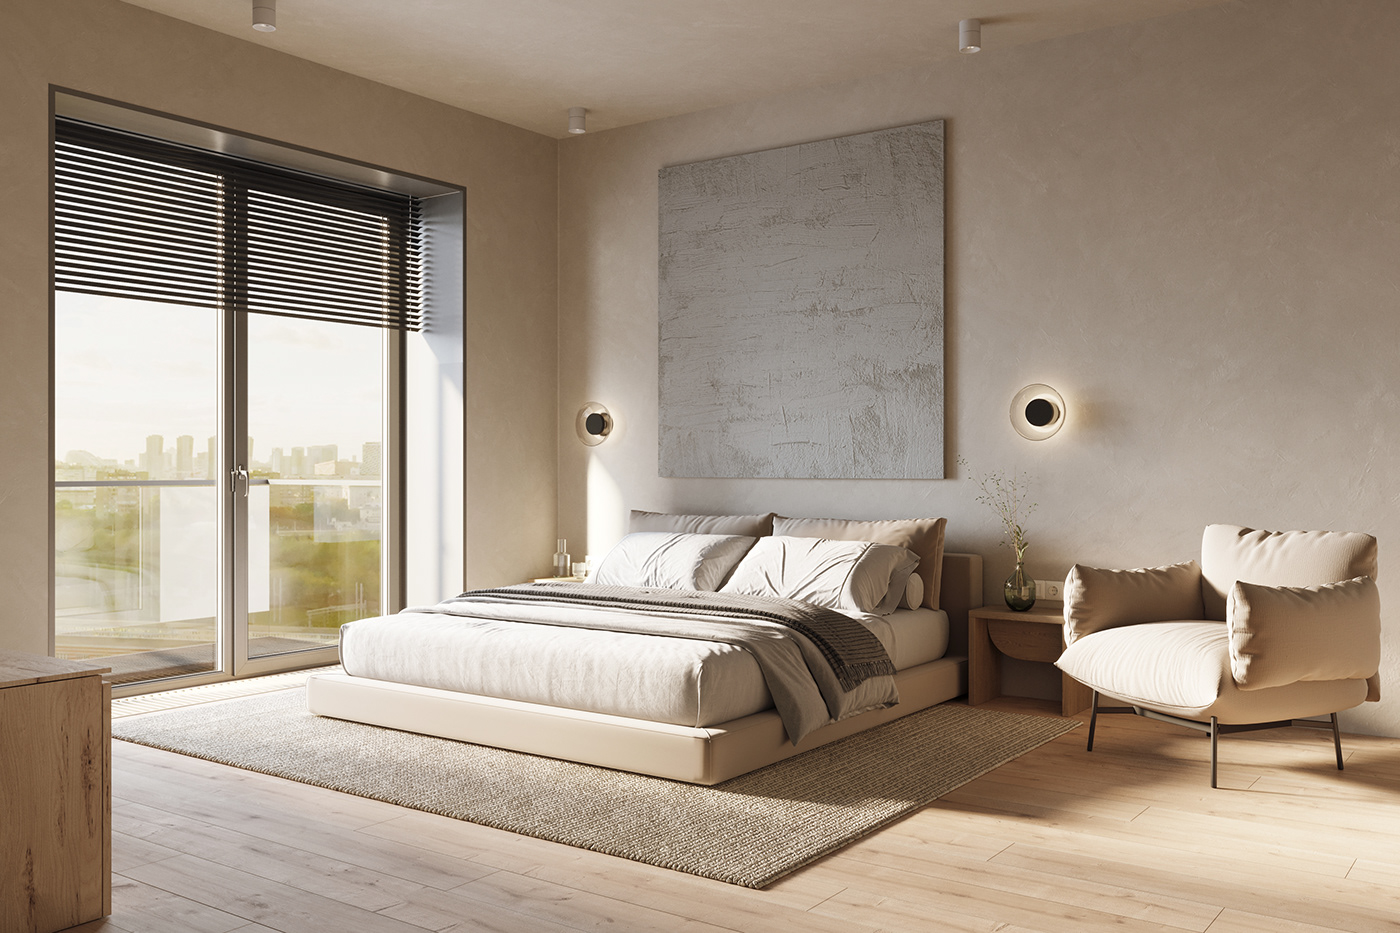 3ds max corona render  designmoscow ganzha GANZHADESIGN ganzhailya interior design  luxury interior minimalist minimalist interior